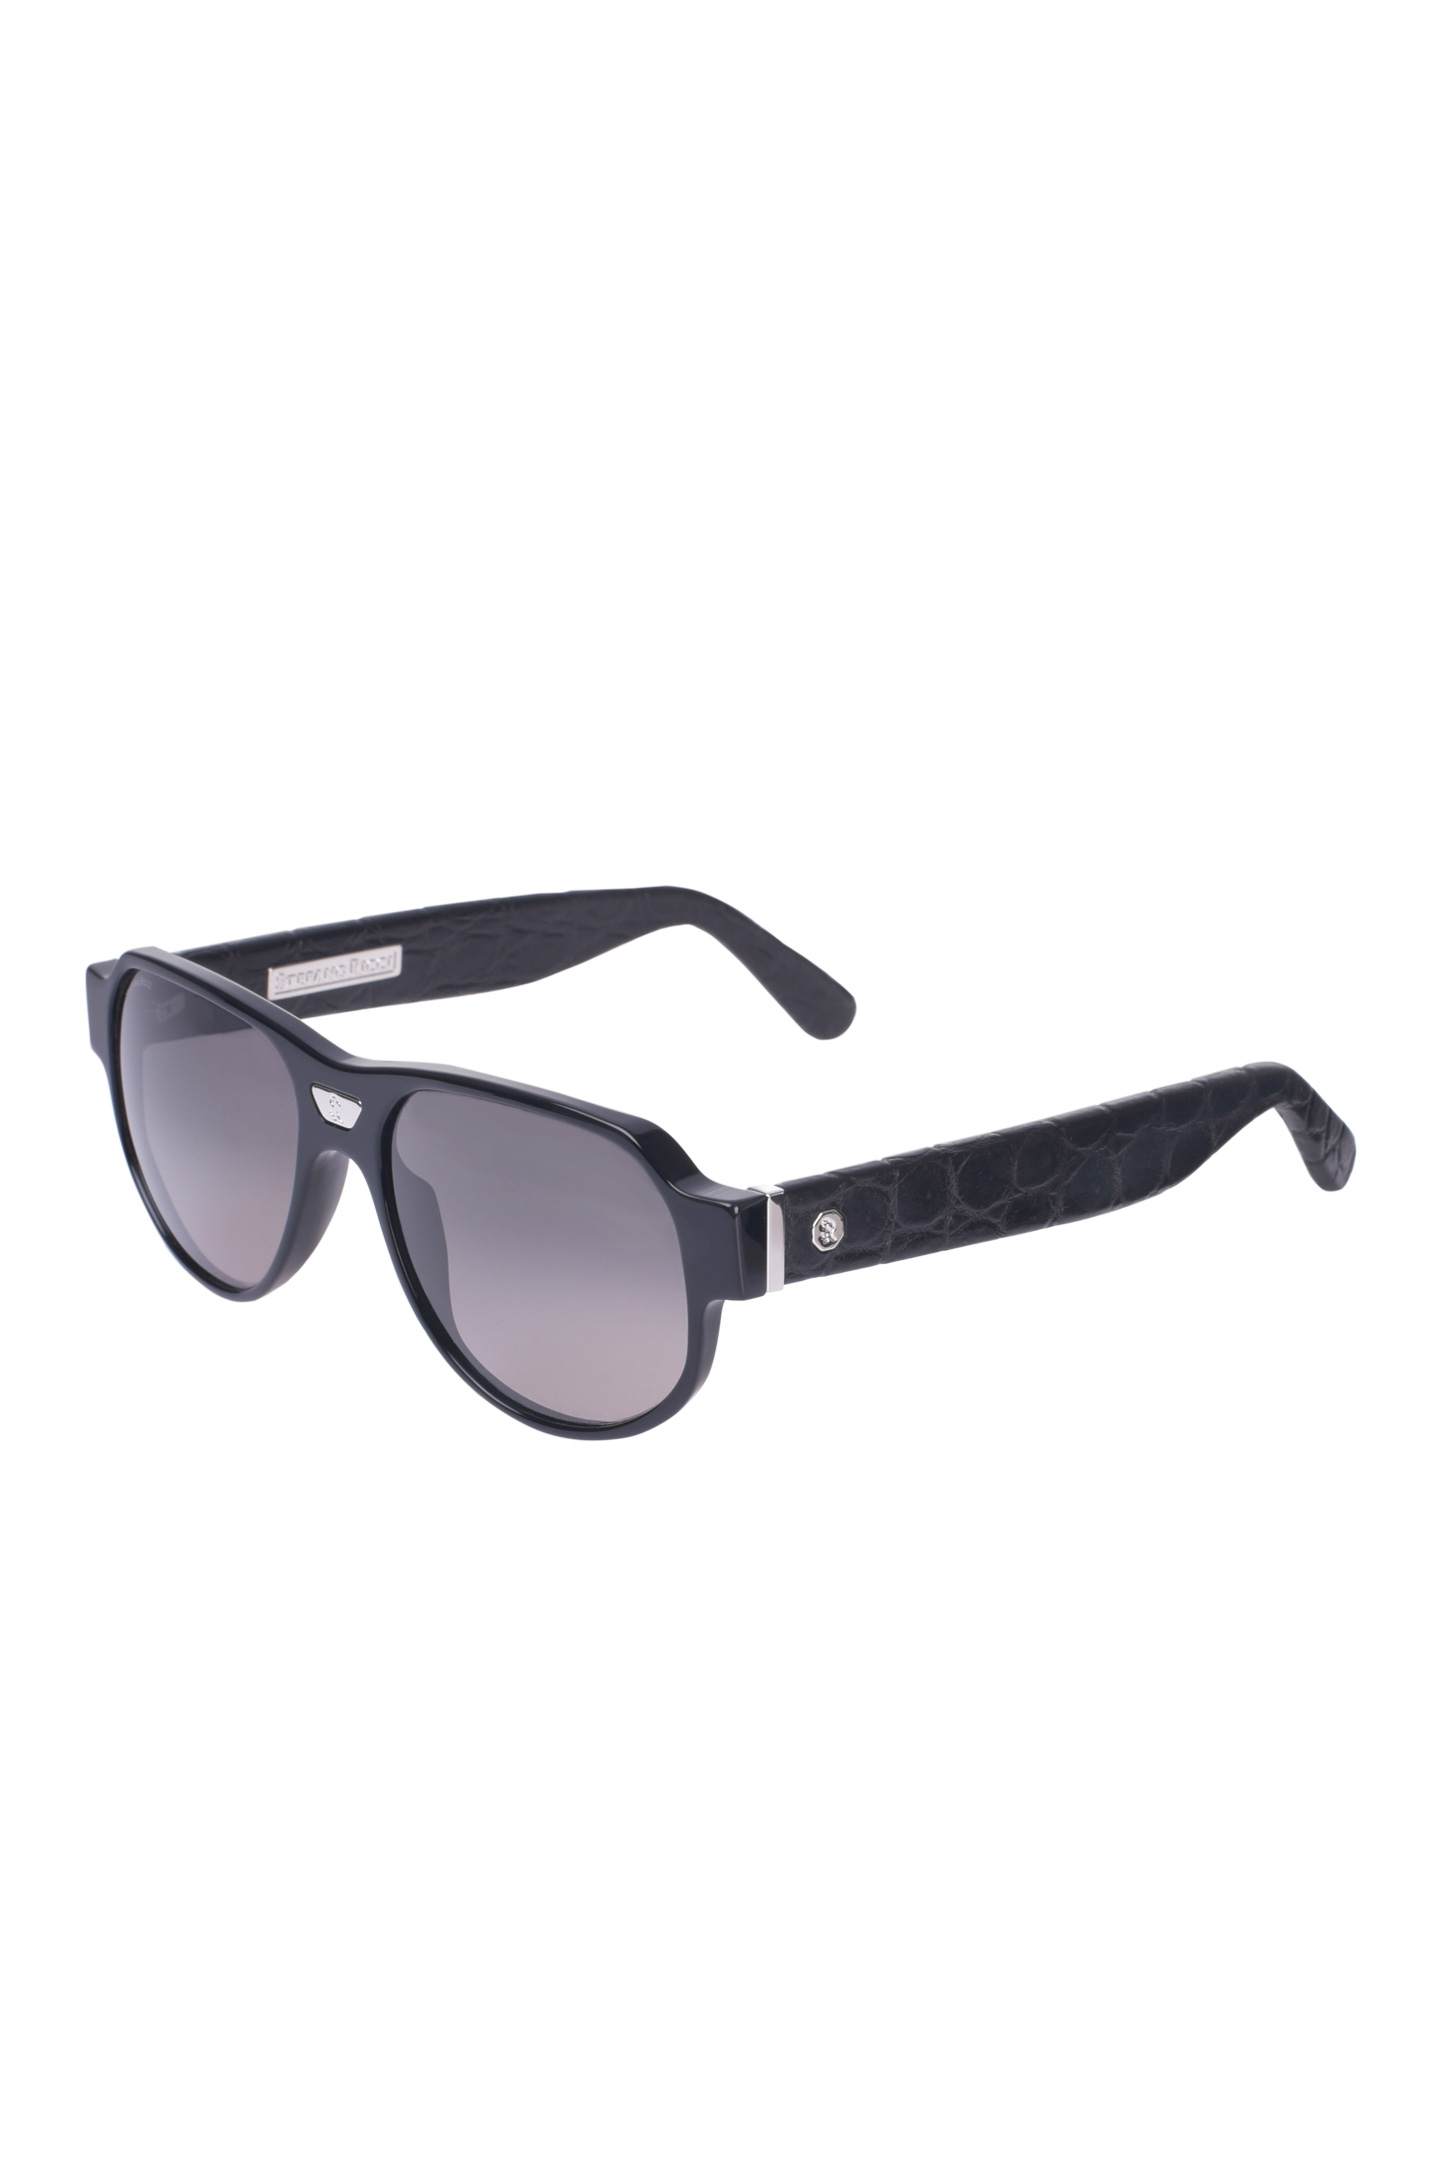 Солнцезащитные очки STEFANO RICCI SG001P CS SGBOXP VDCS, цвет: Черный, Мужской